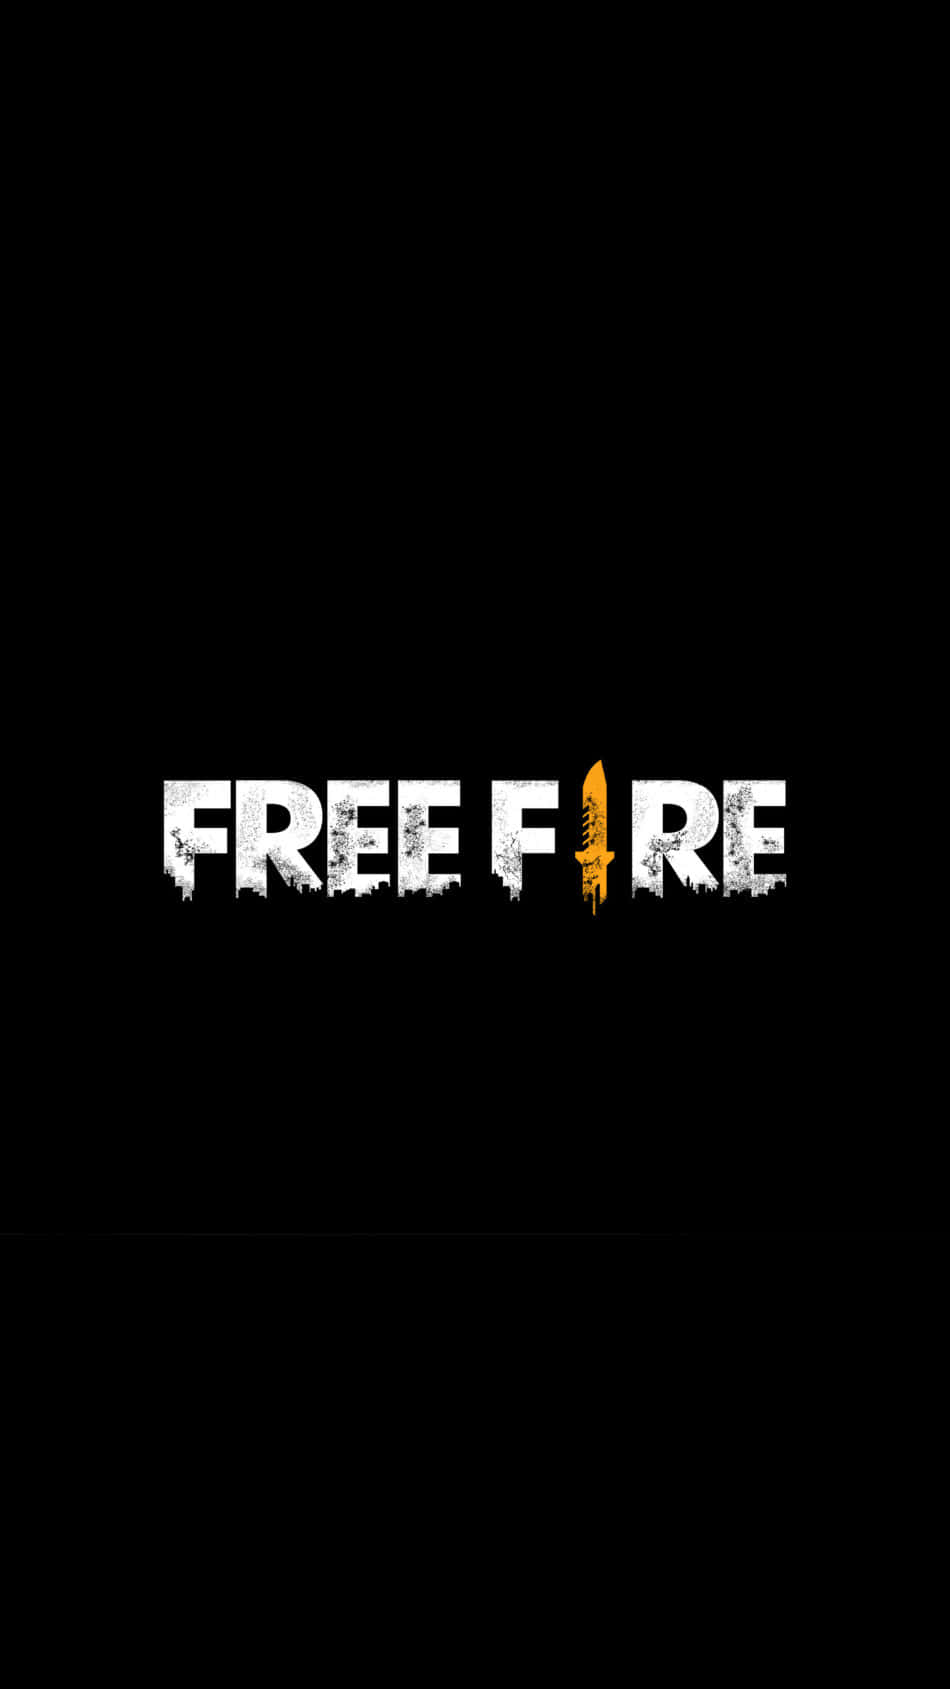 Unbrillante Logo De Free Fire Amarillo Con Contorno Negro.